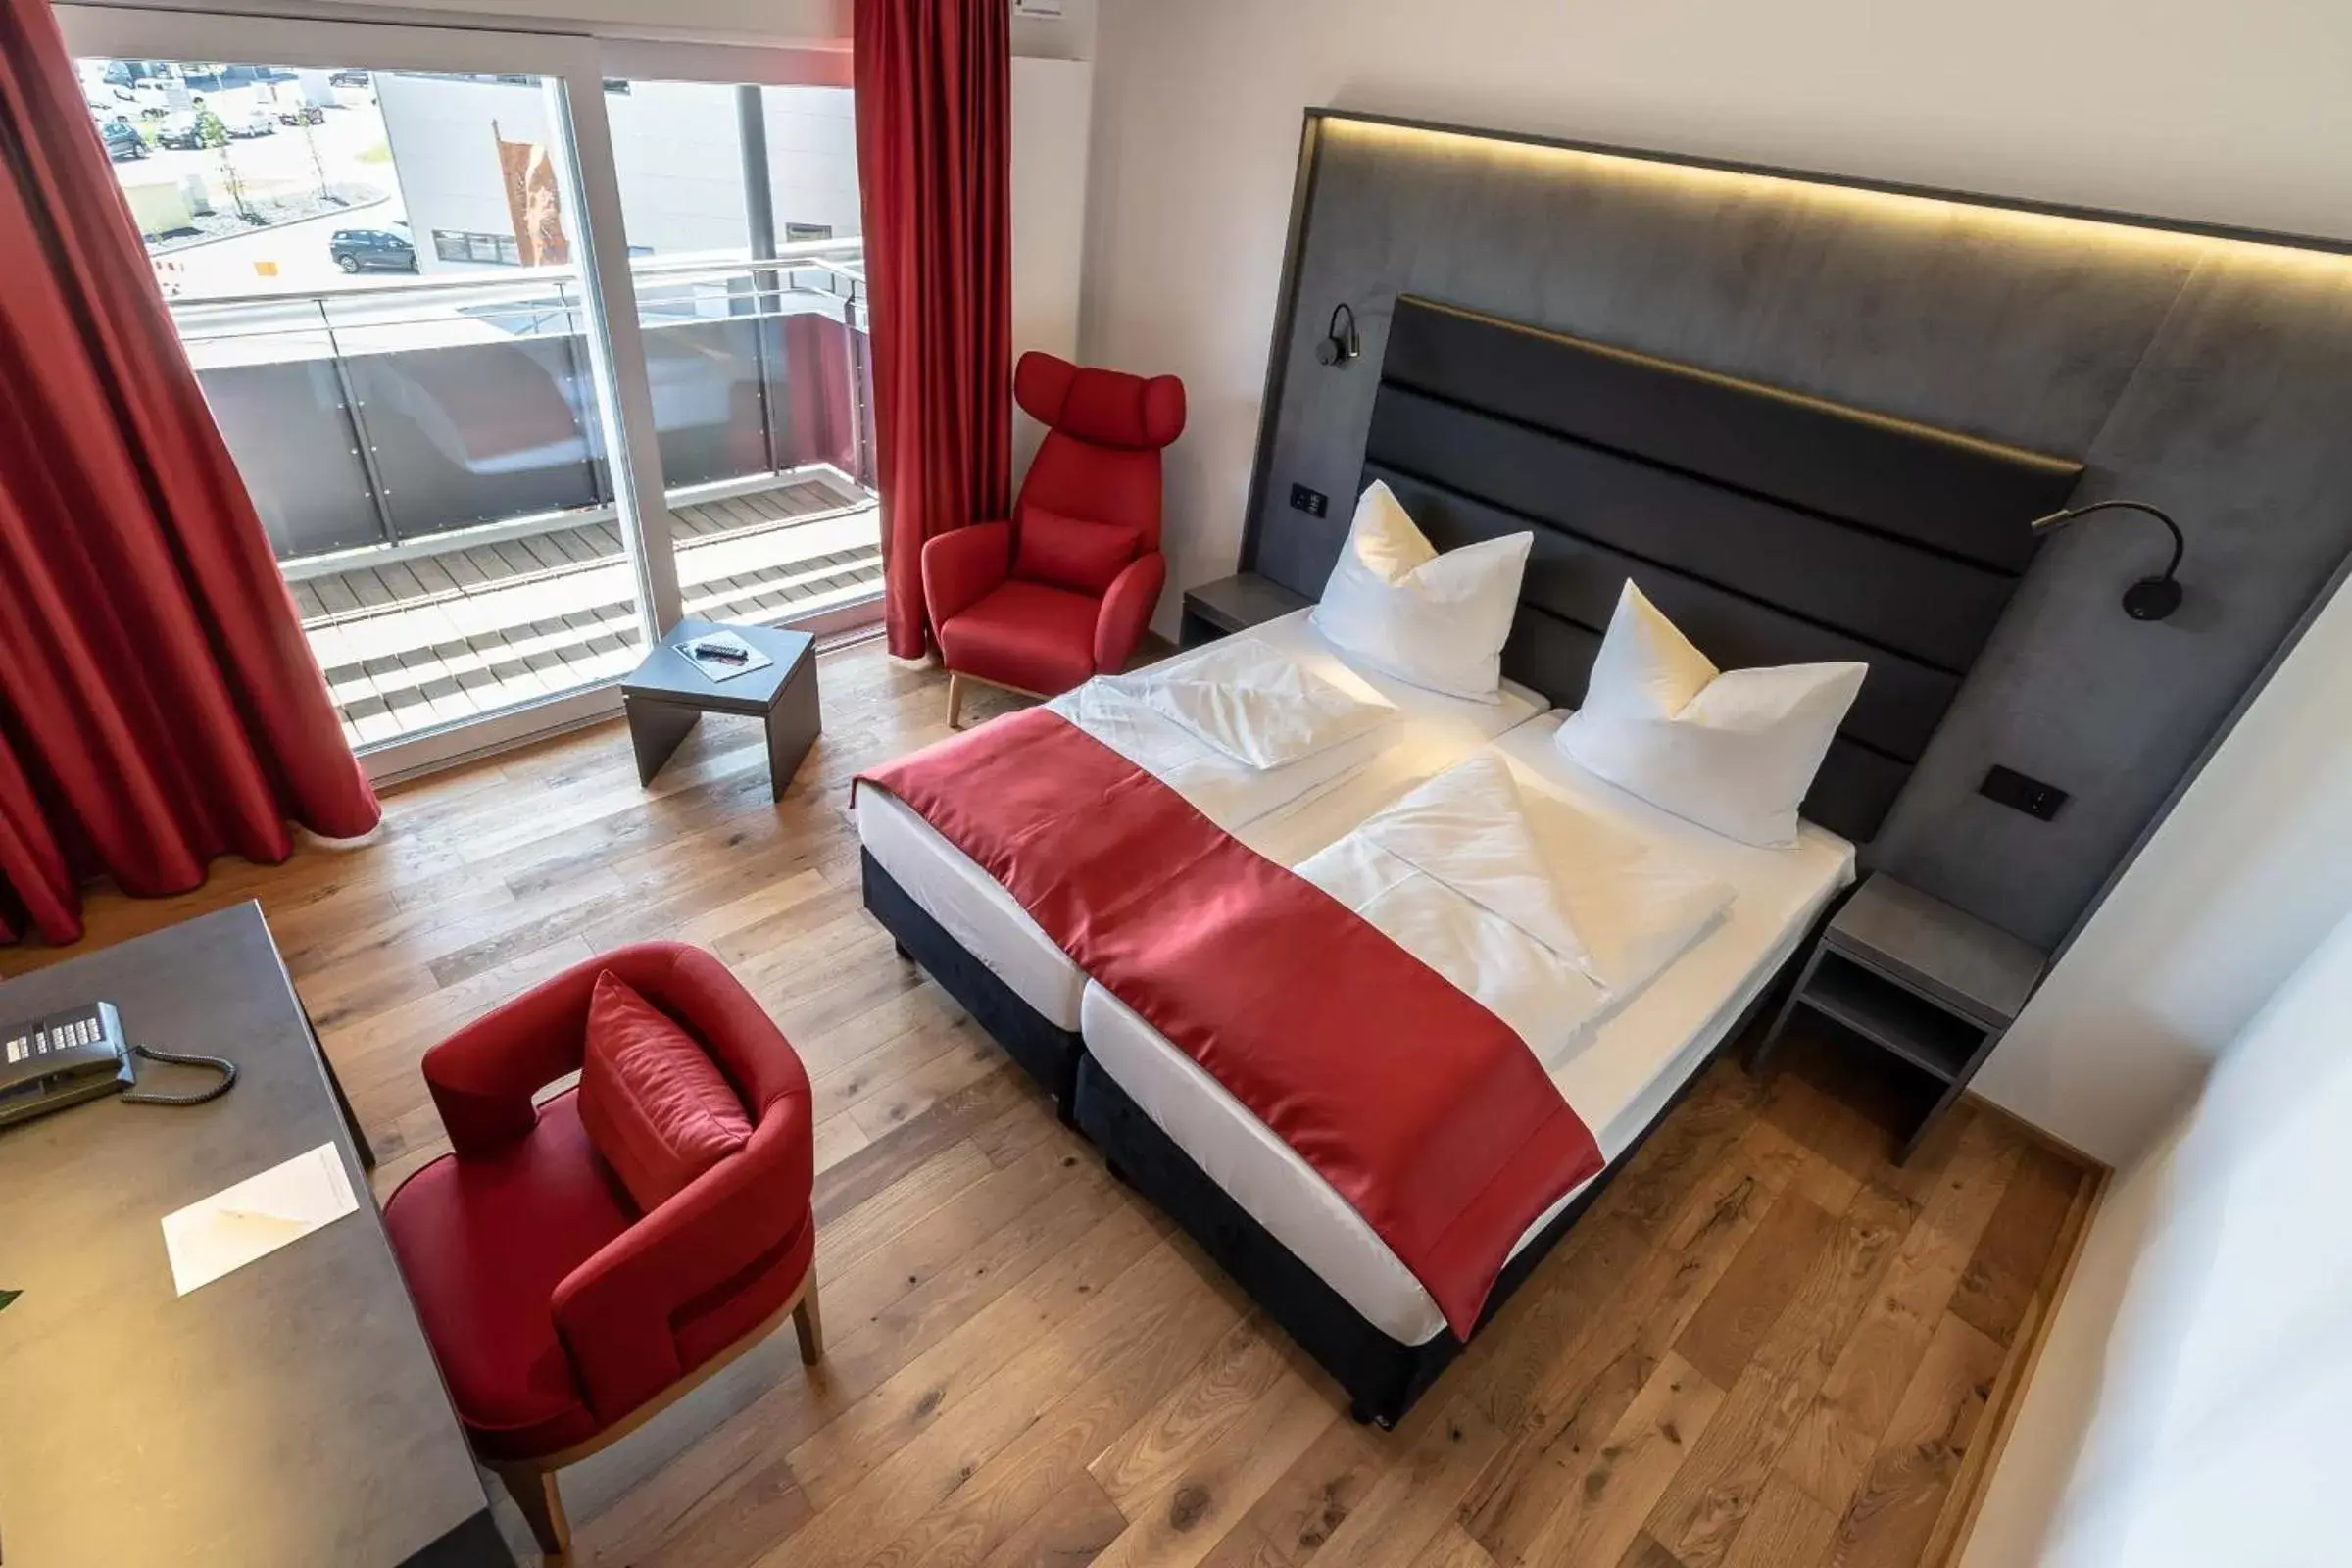 Bed in Augsburg Hotel Sonnenhof